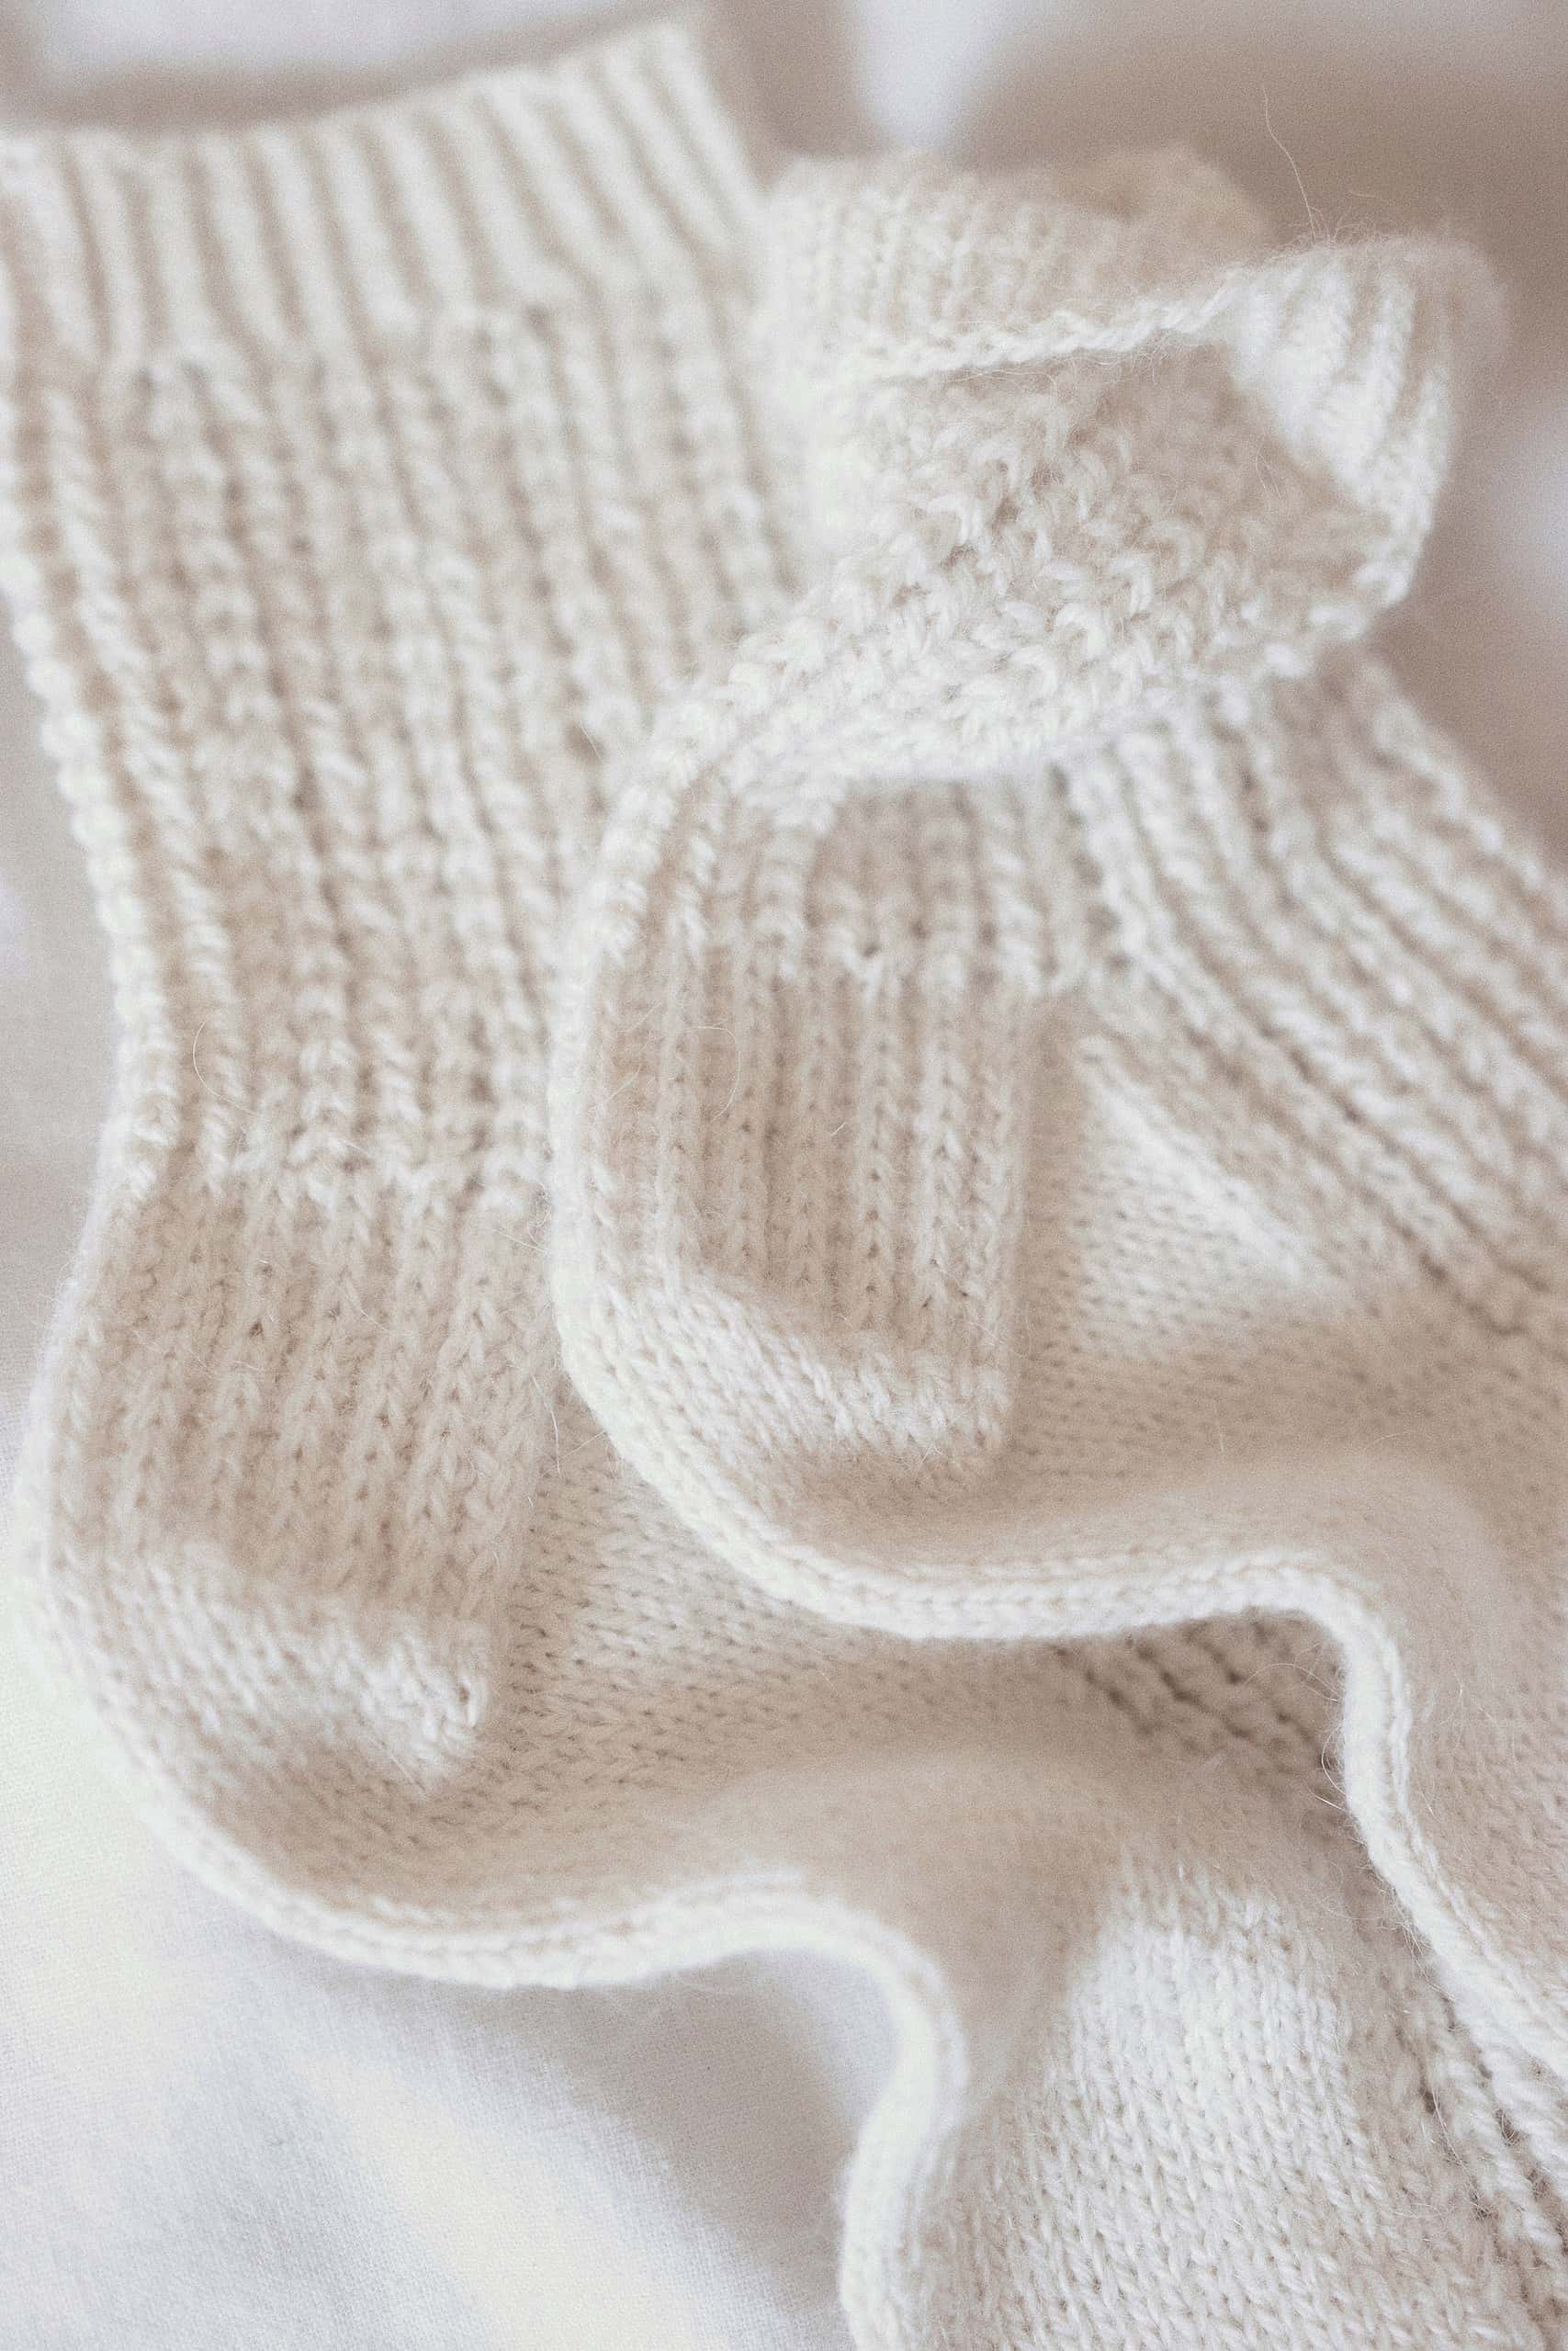 Lace Socks Knitting Pattern, Easy Knit Socks Pattern, Snowfield Socks